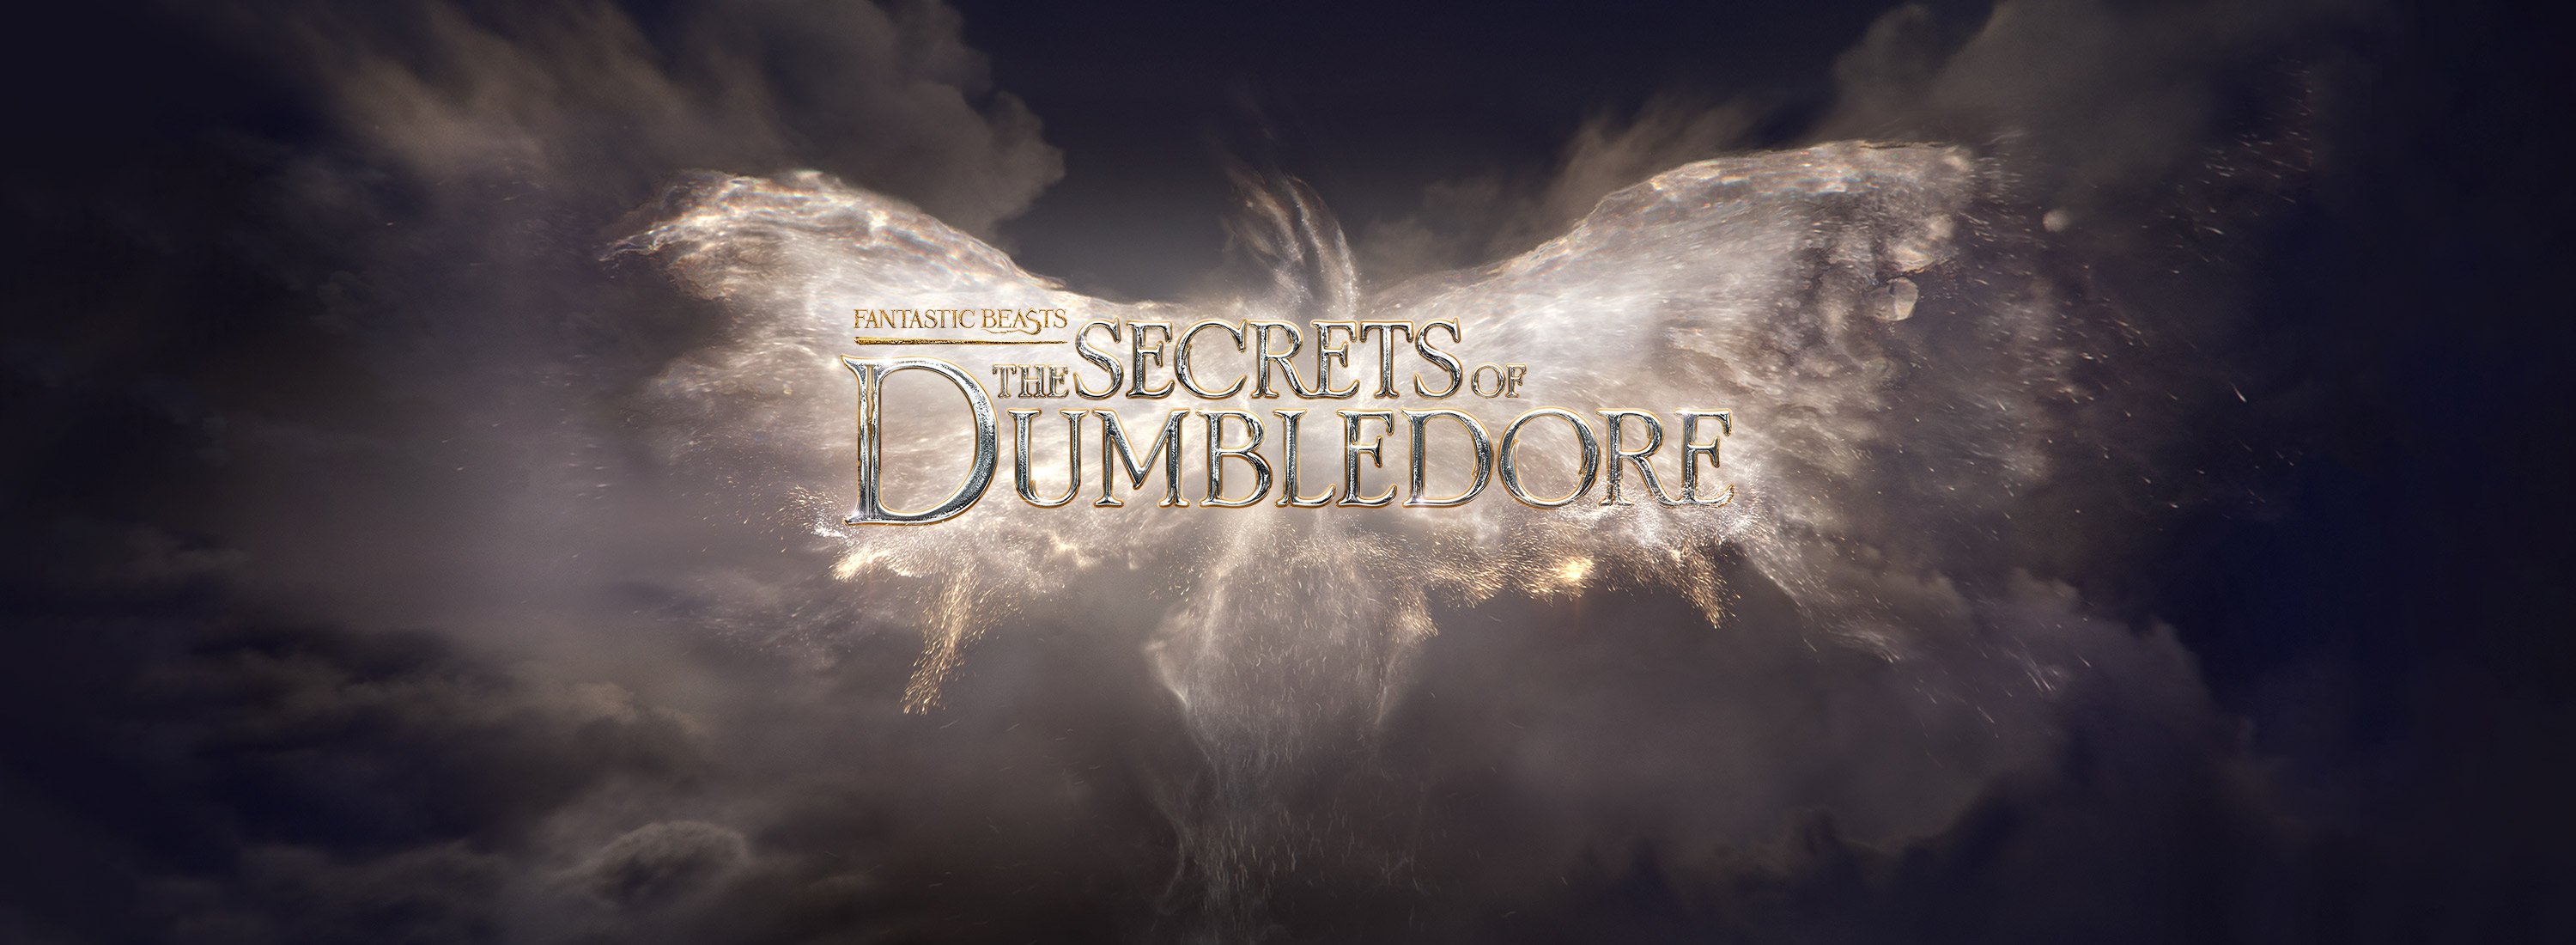 Fantastic Beasts: The Secrets Of Dumbledore HD Wallpaper